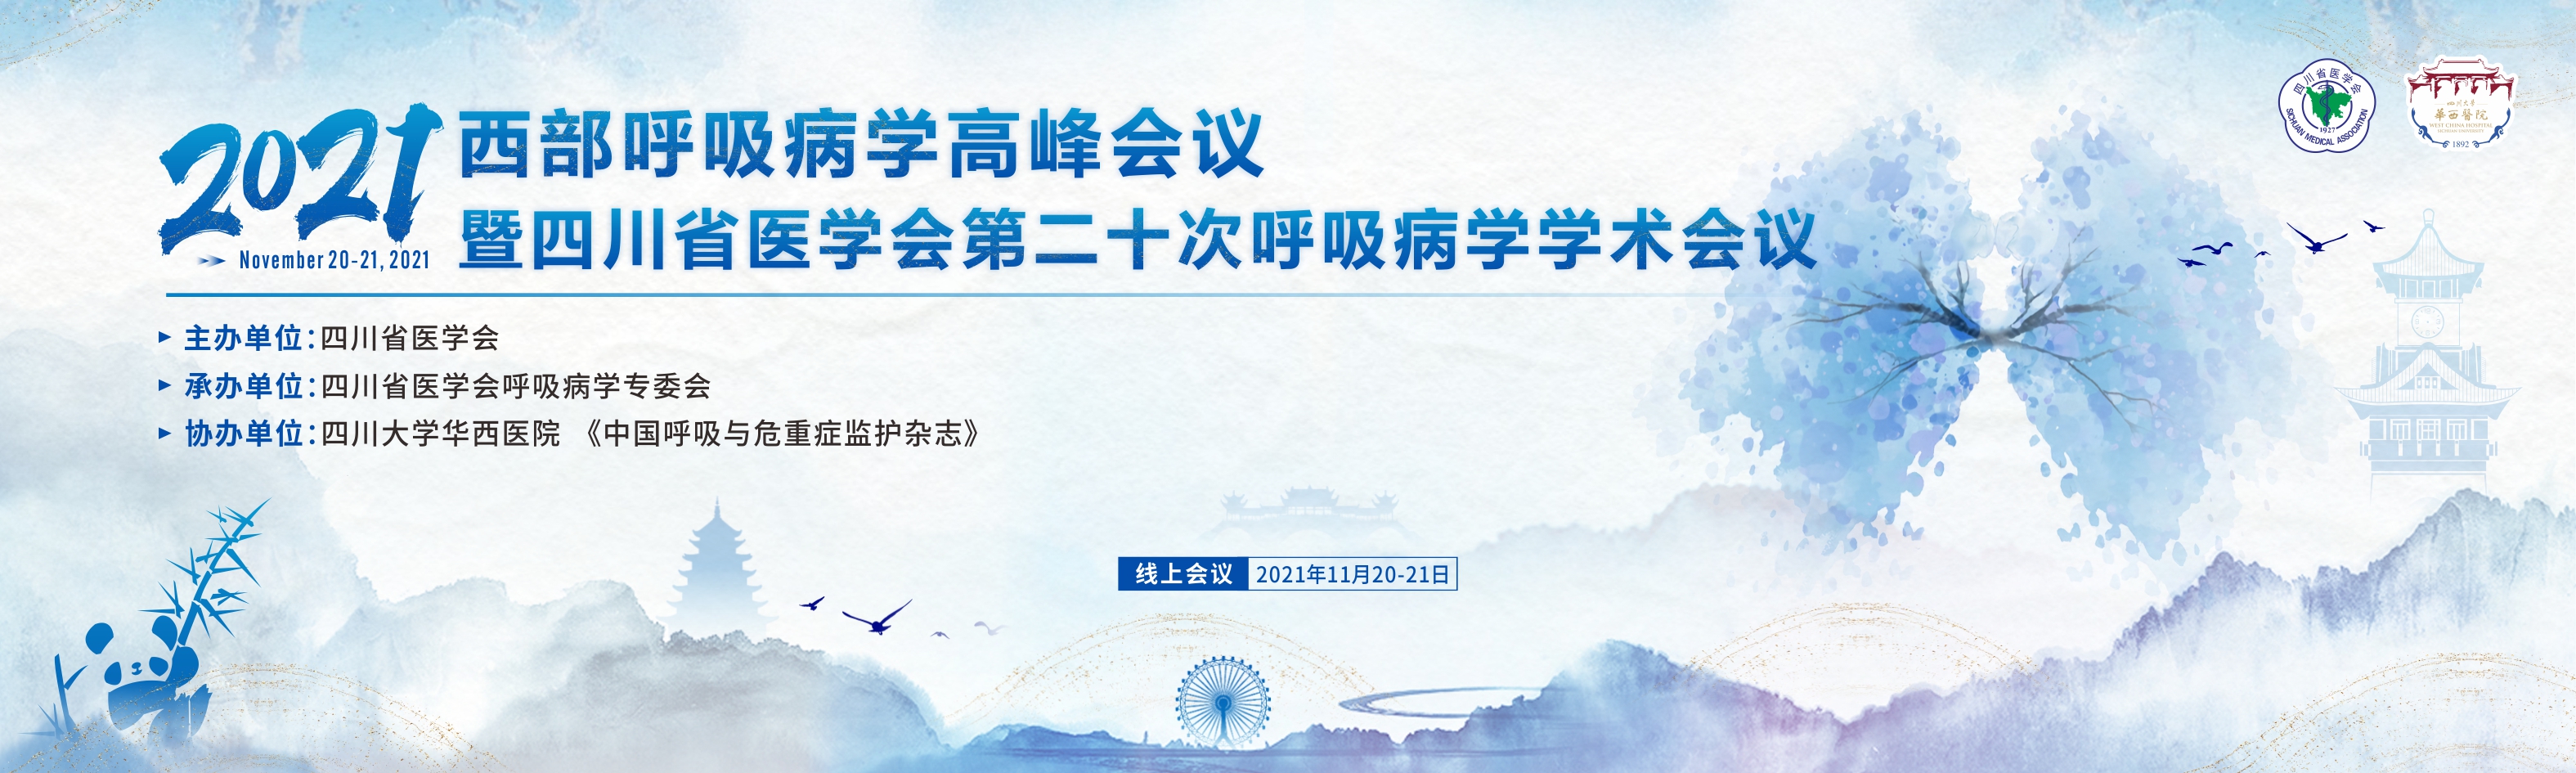 2021西部呼吸病学高峰会议暨四川省医学会第二十次呼吸病学学术会议